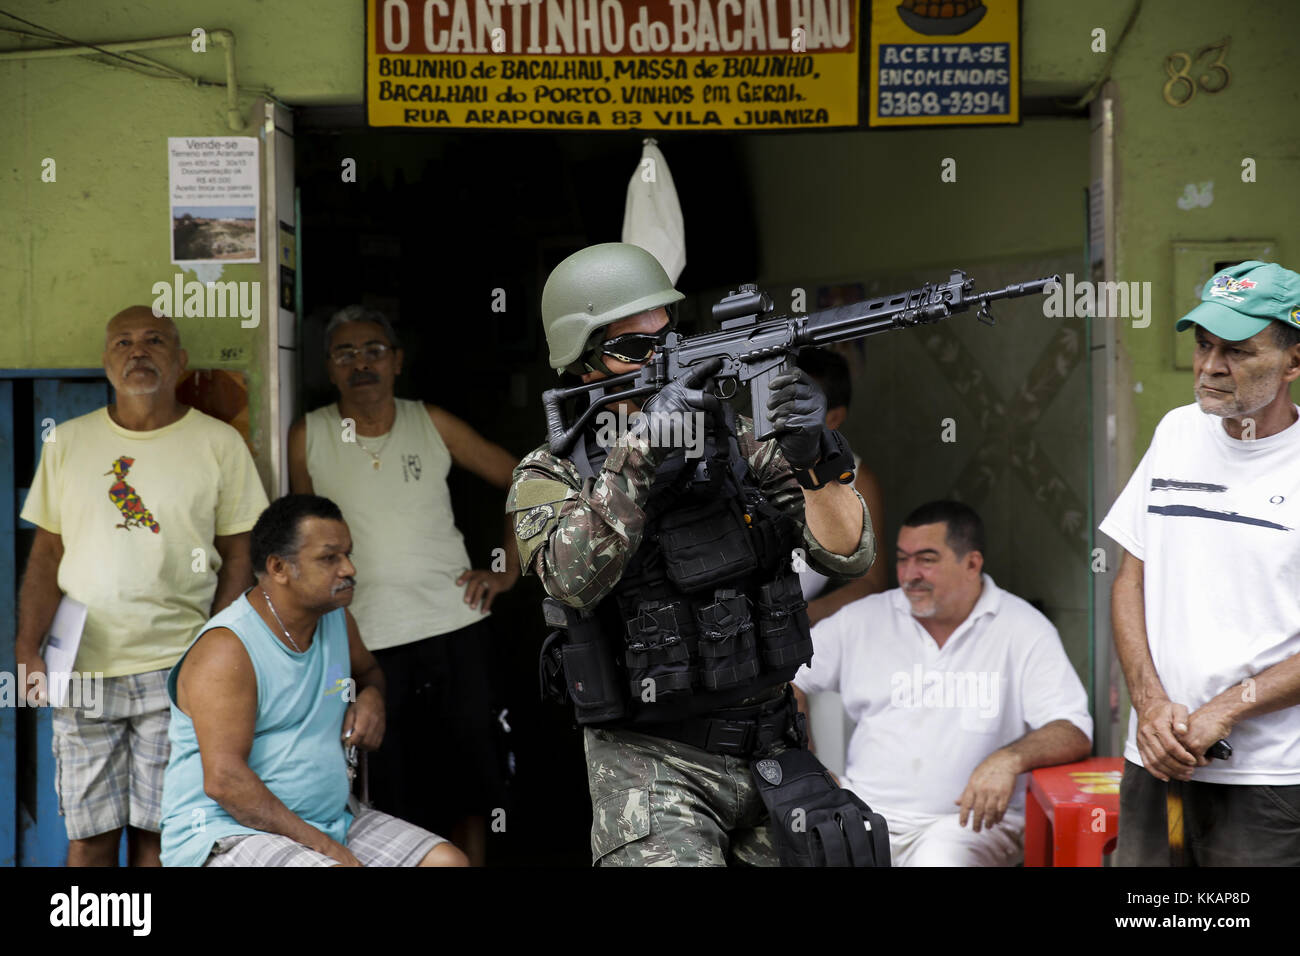 30 novembre 2017 - Rio de Janeiro, Brésil - un membre des forces armées au cours des patrouilles d'une opération contre les gangs dans les taudis barbante complexe dans Rio de Janeiro. (Crédit image : © luciano belford via zuma sur le fil) Banque D'Images